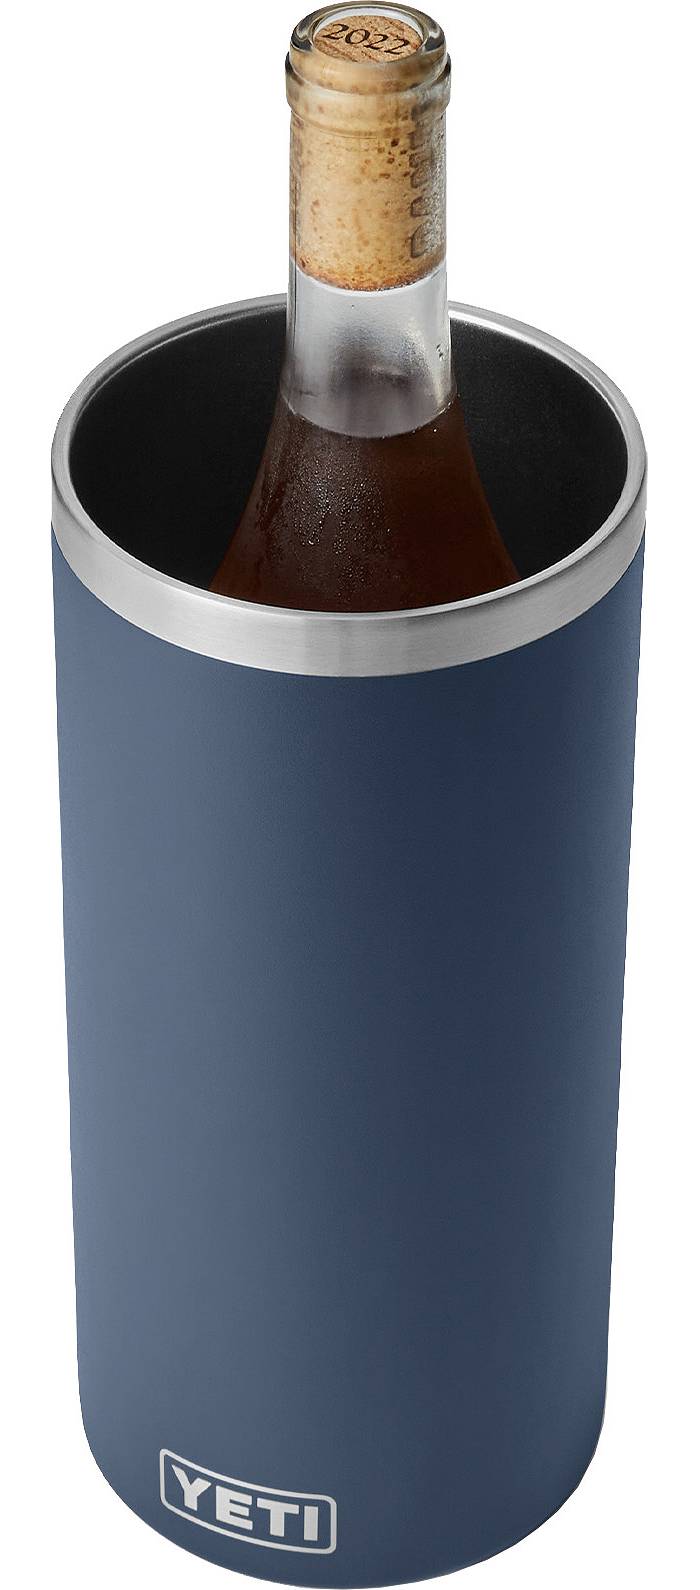 Yeti Wine, Beer & Beverage Coolers